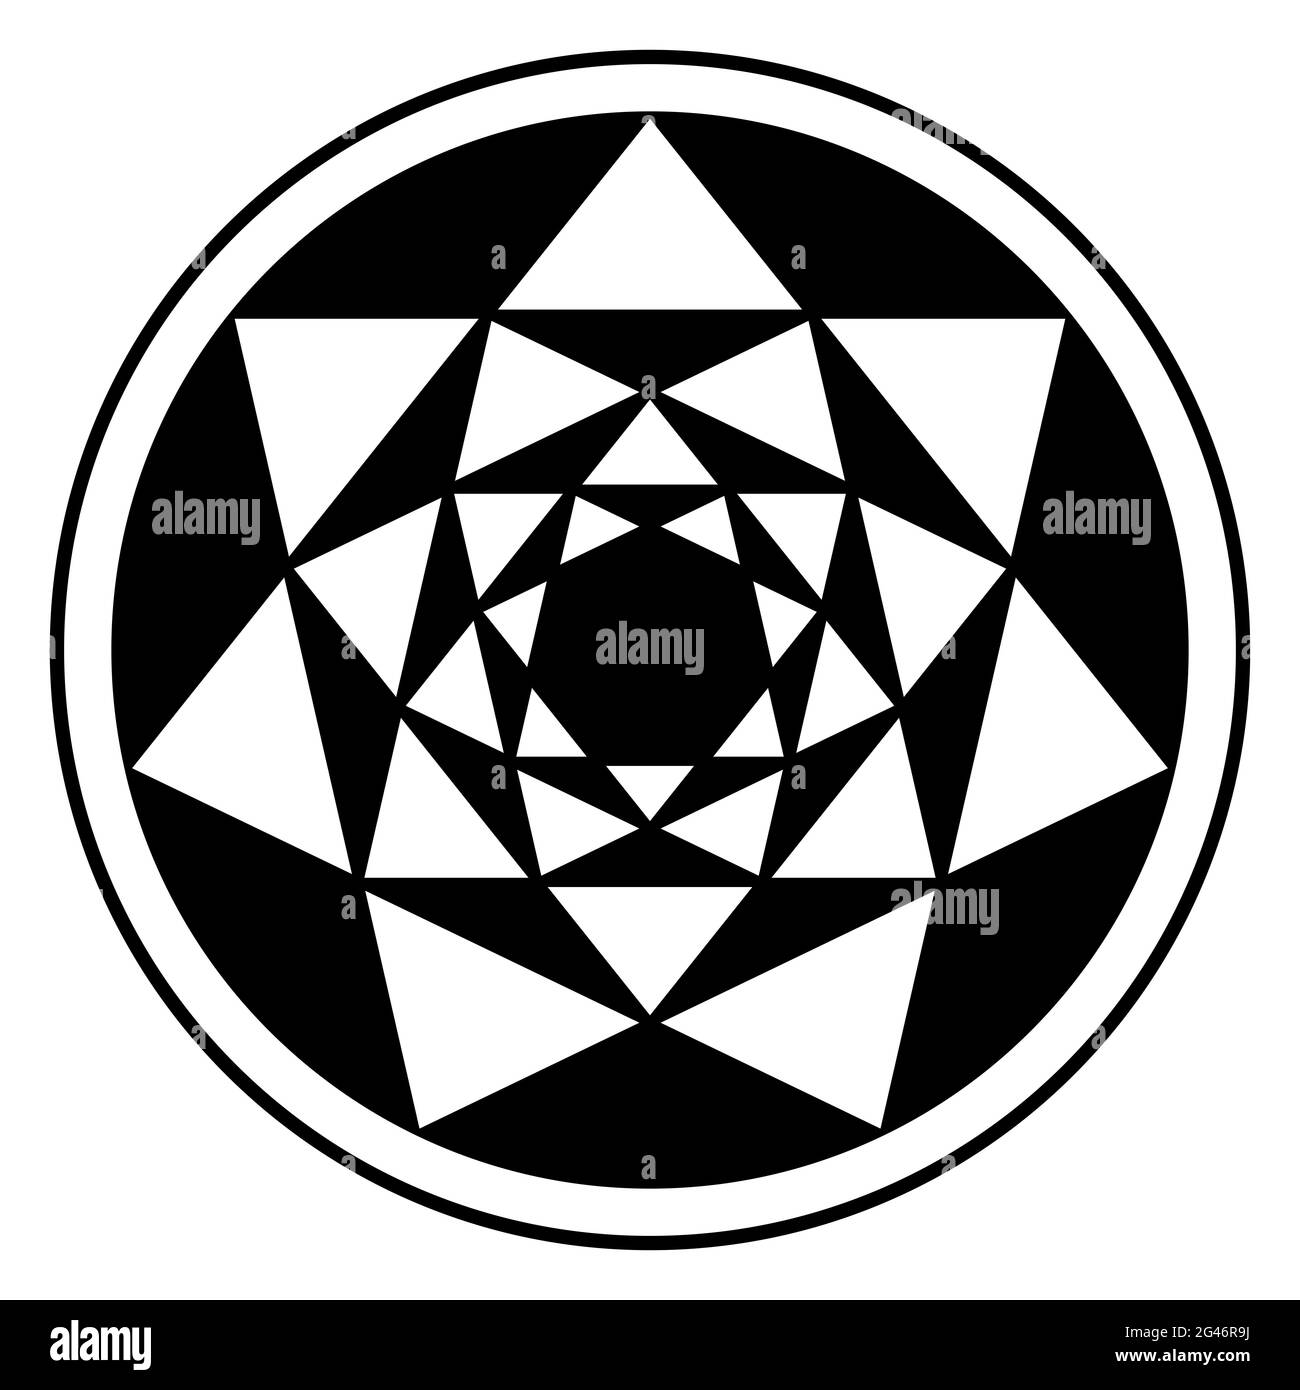 Quatre heptagrammes inversés, et leurs modèles de triangle résultants, dans le cadre de cercle. Points de passage de sept étoiles pointues placées l'une à l'intérieur de l'autre. Banque D'Images